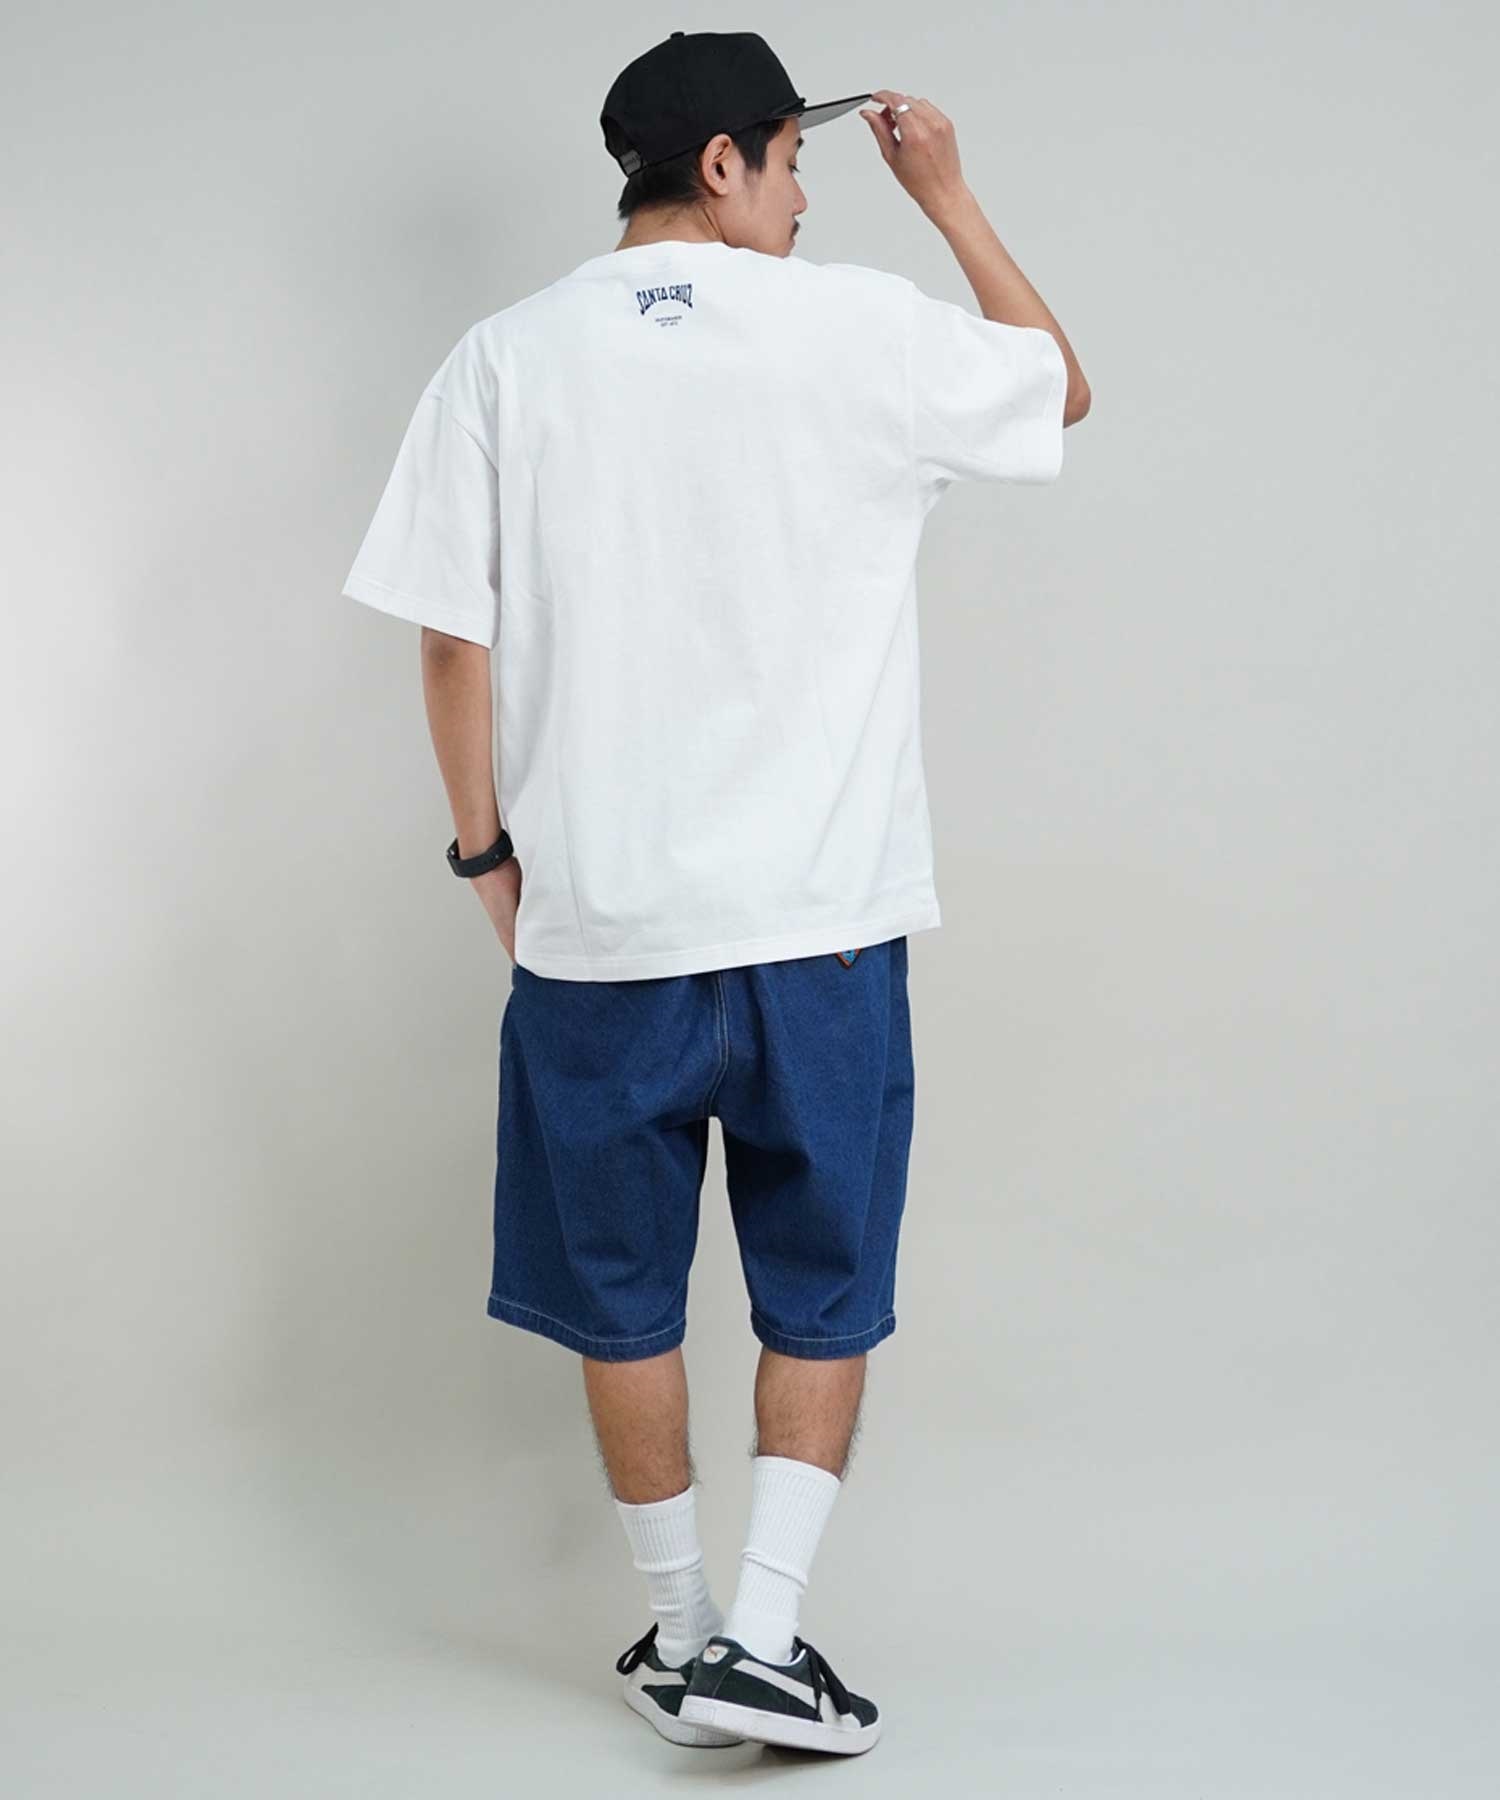 【ムラサキスポーツ限定】 SANTACRUZ サンタクルーズ Tシャツ クルーネック メンズ 半袖 Tシャツ 502241413(WHITE-M)